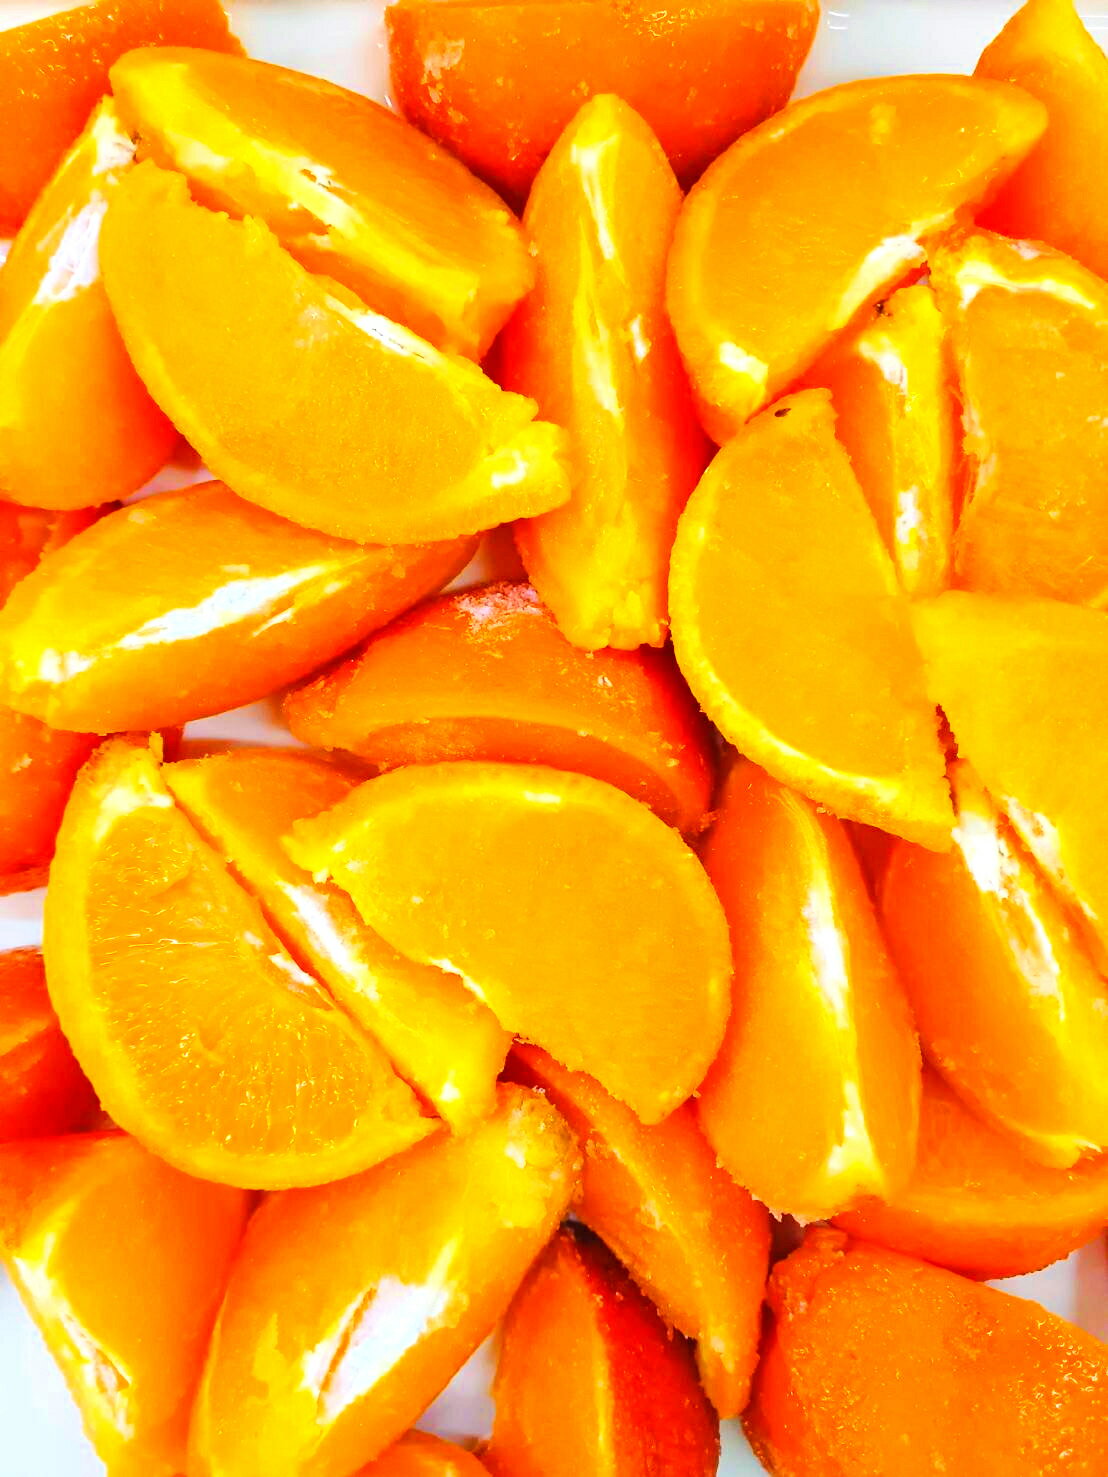 【KIMONO FRUITS】不知火オレンジ デコポン同品種 1/6カット 1000g 広島県産 ノーワックス品 バラ凍結で使いやすいです 冷凍不知火みかん